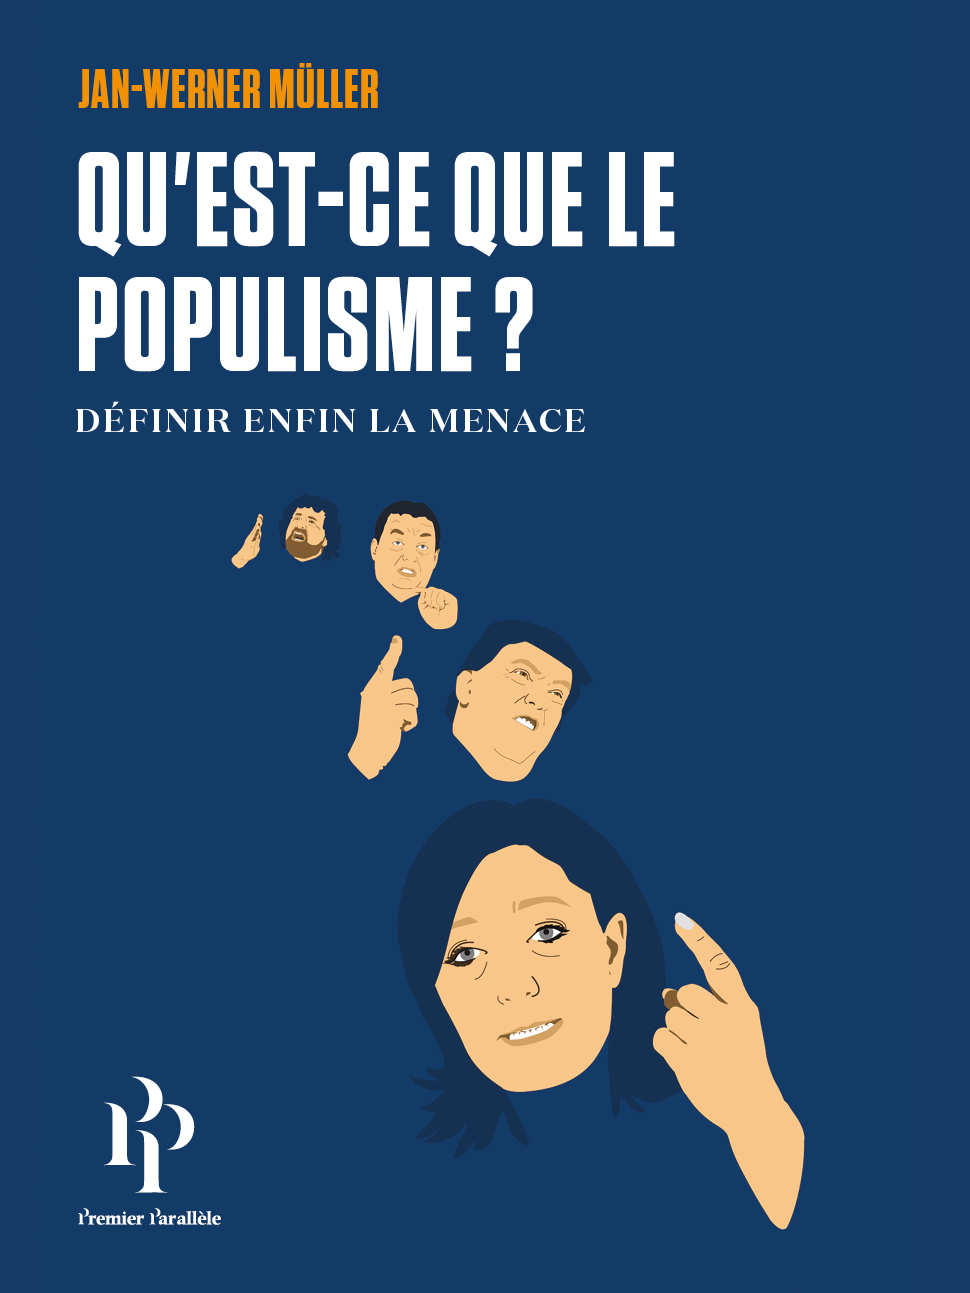 Qu Est Ce Que Le Langage Qu’est-ce que le populisme? :: Premier Parallele